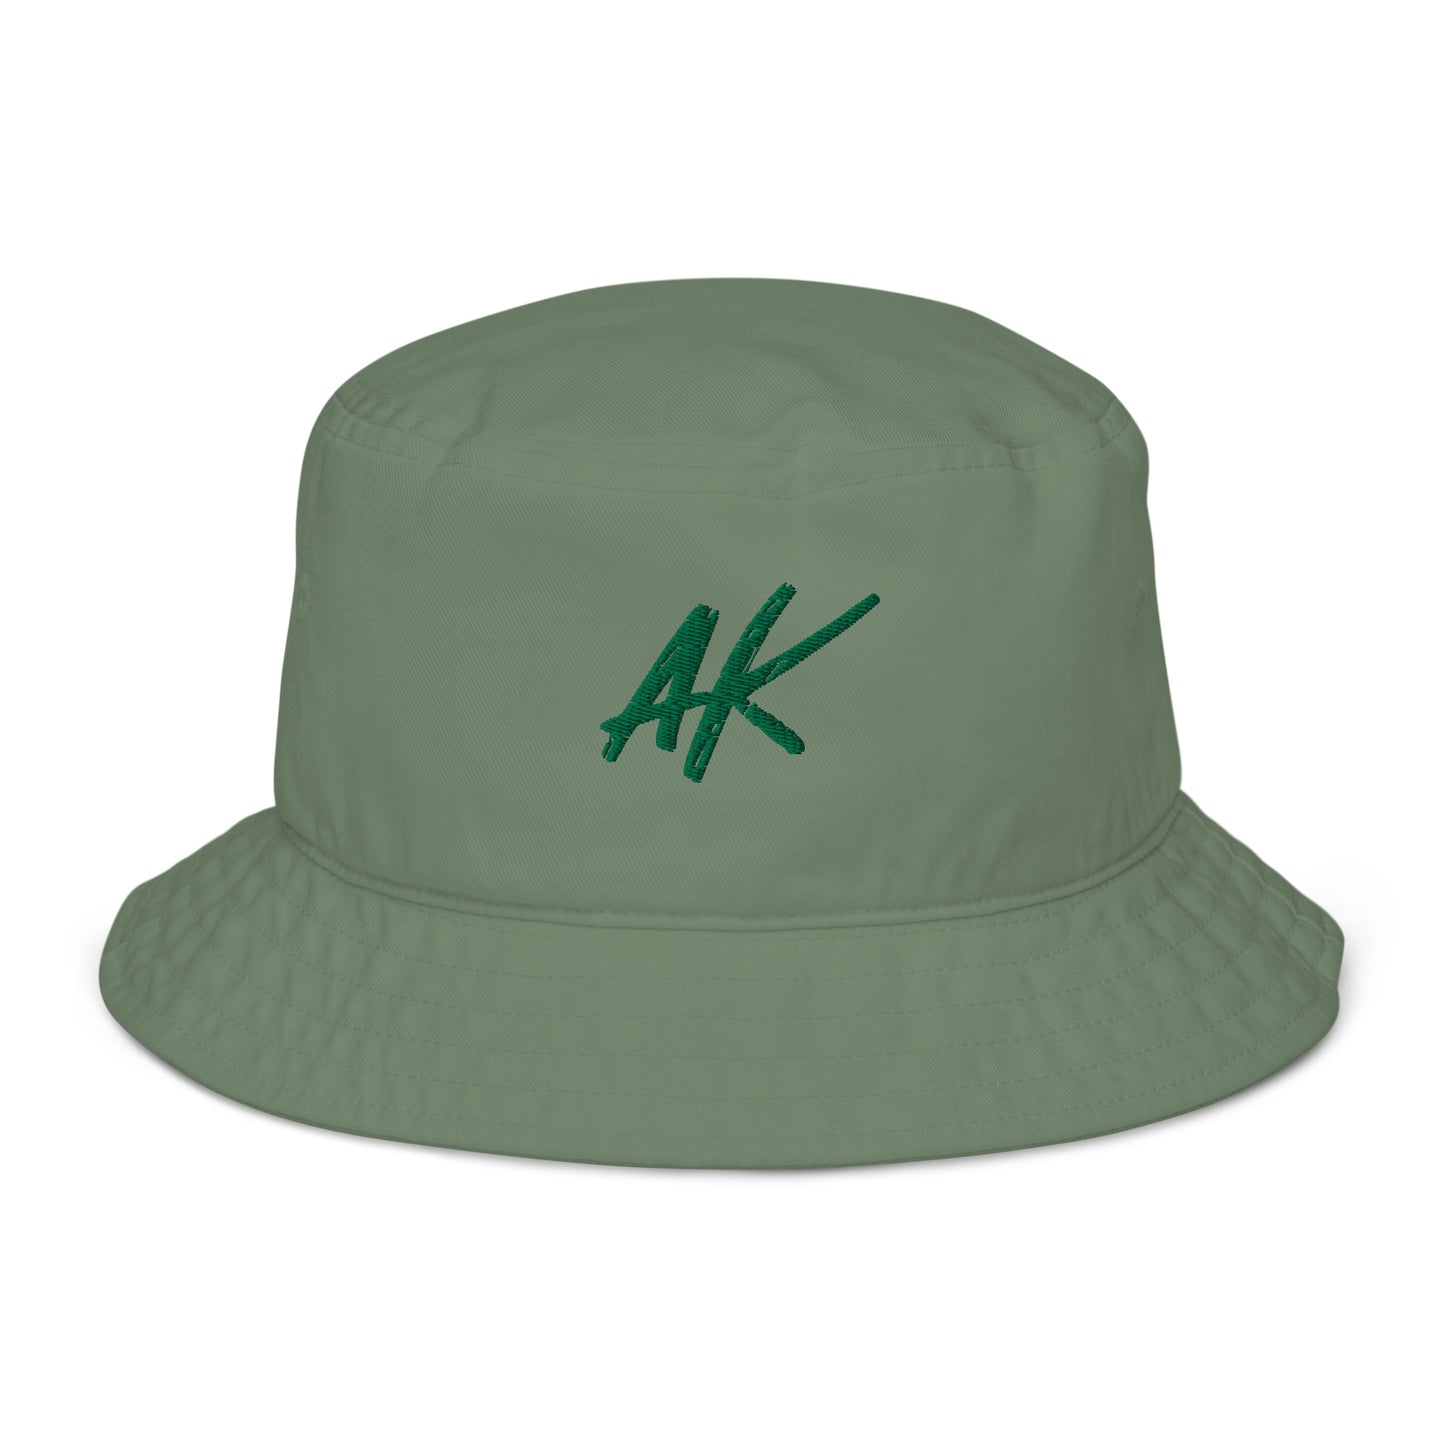 AK bucket hat (green)